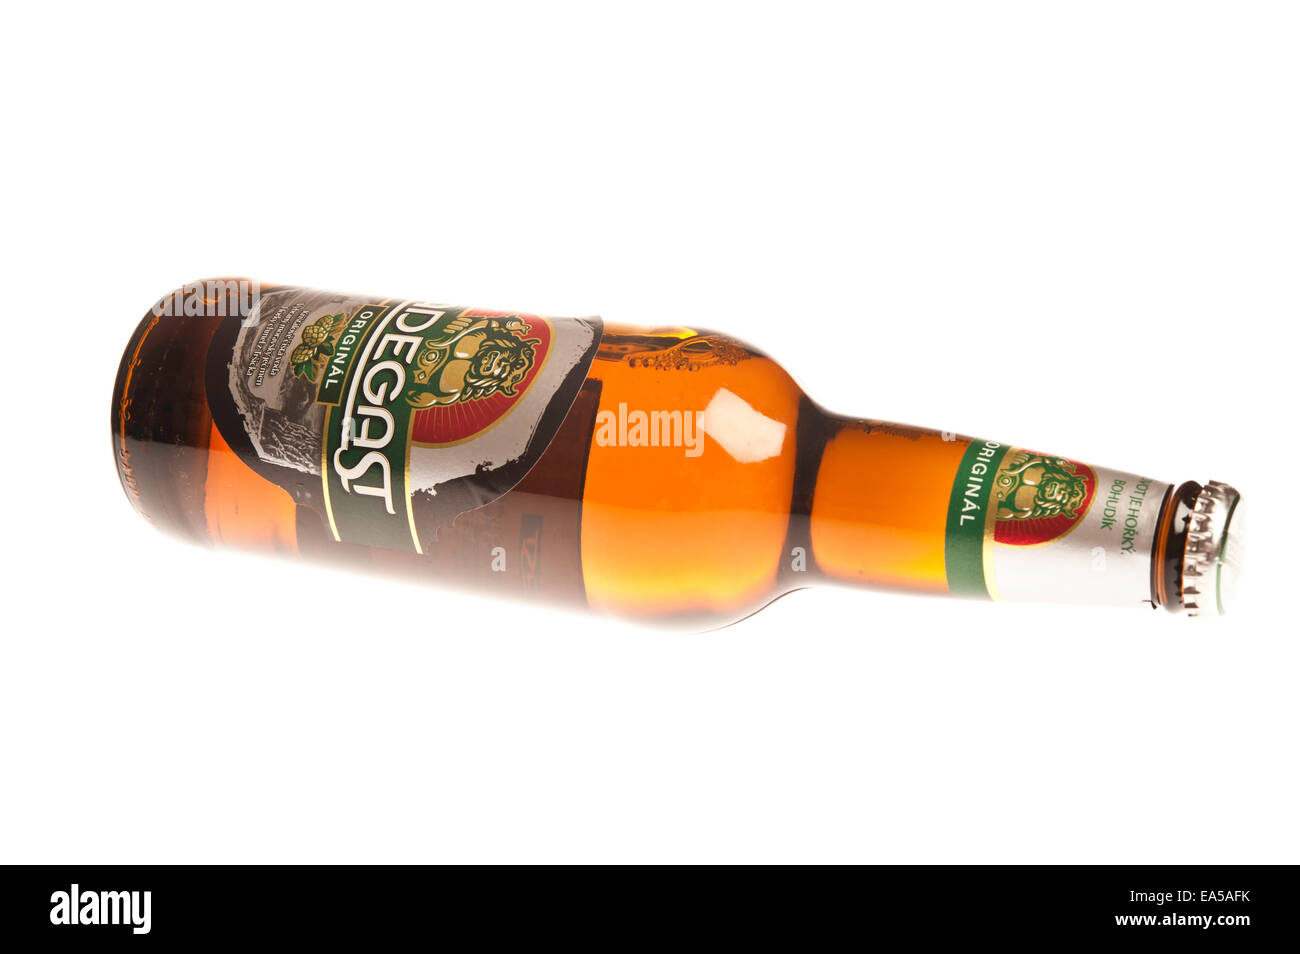 Flasche tschechisches Bier Radegast Stockfotografie - Alamy